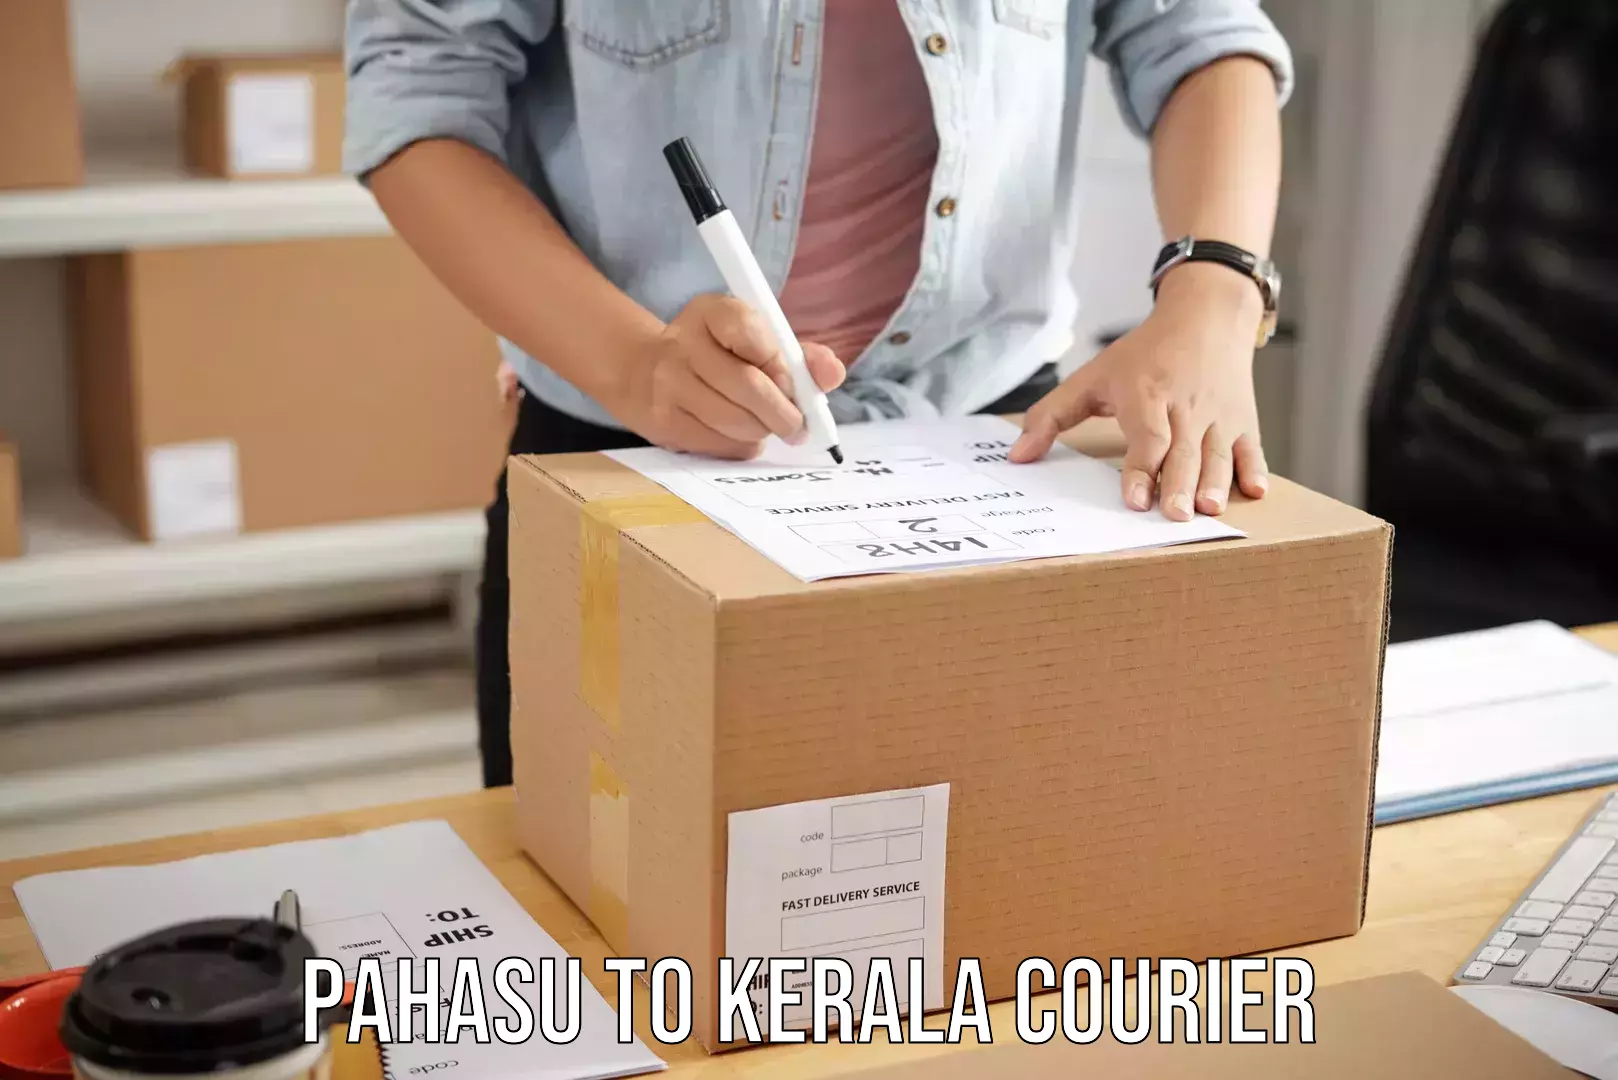 Baggage shipping experts Pahasu to Kerala